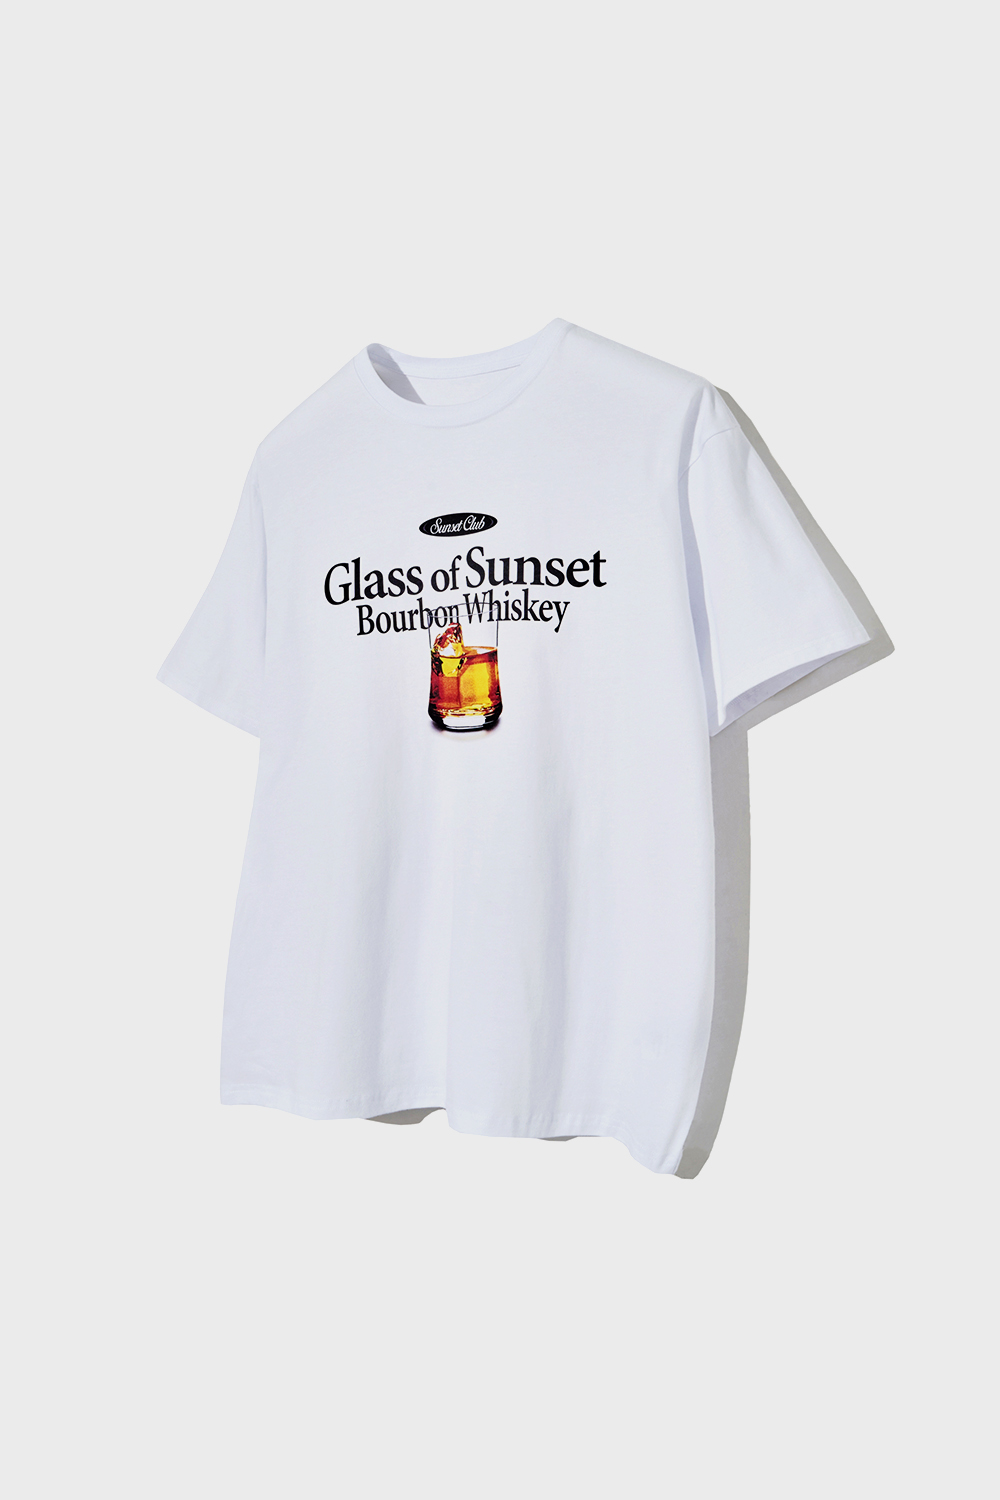 Glass of Sunset T-Shirts (White)